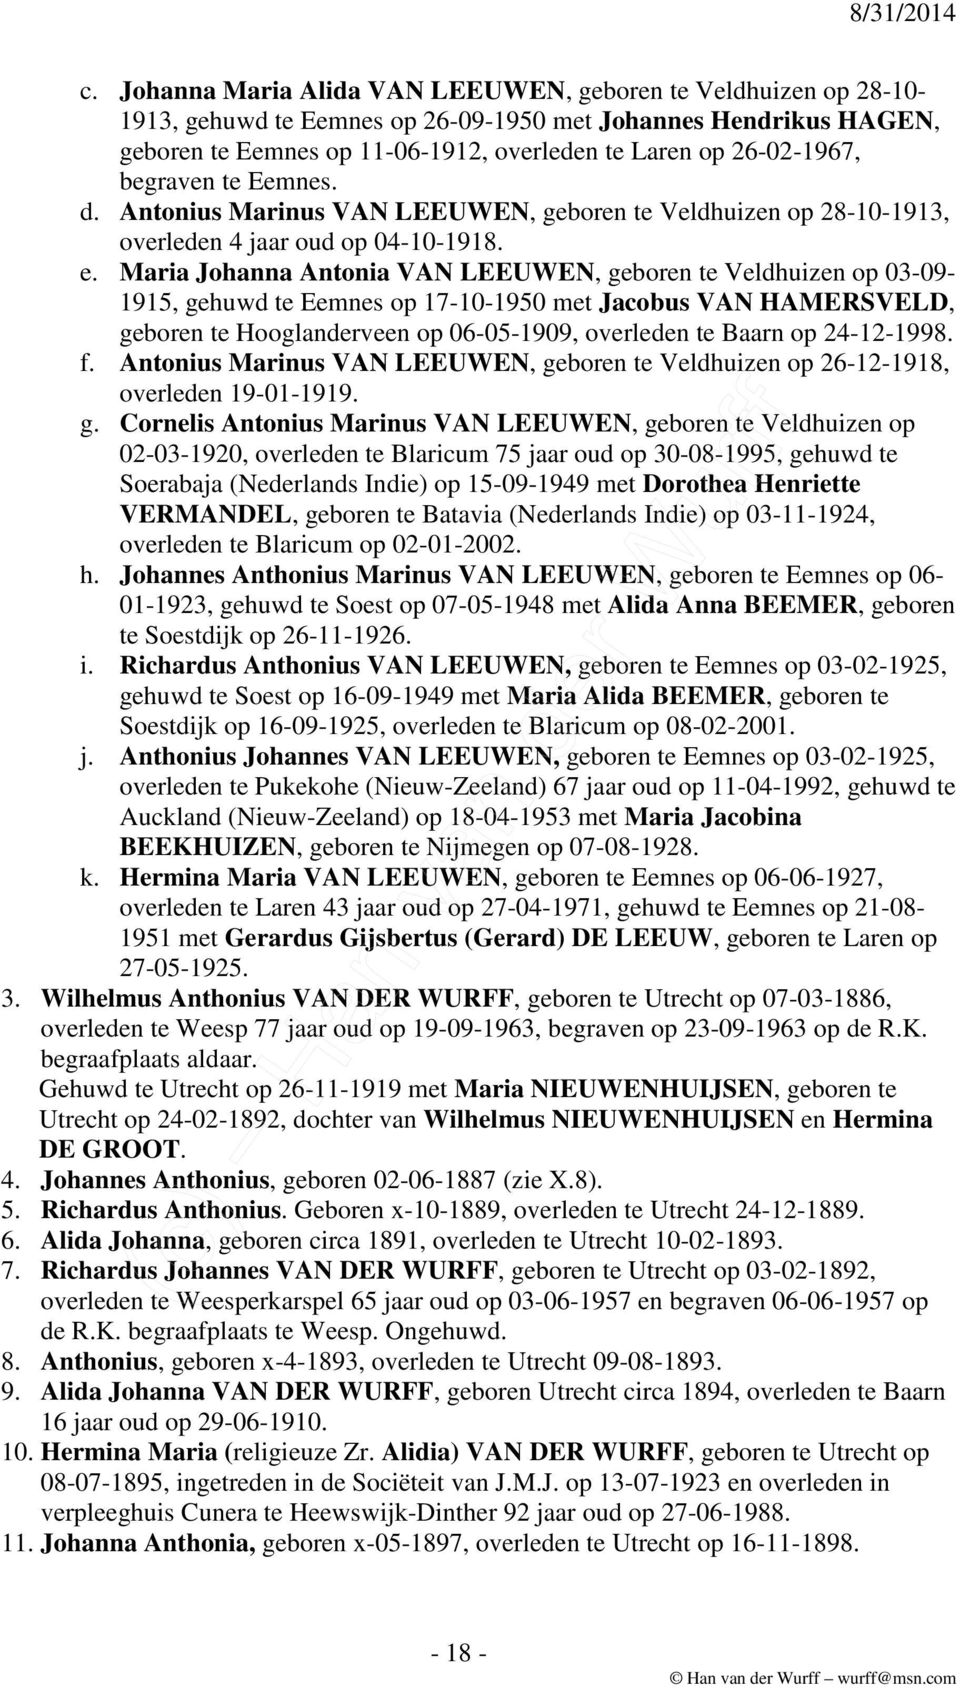 Maria Johanna Antonia VAN LEEUWEN, geboren te Veldhuizen op 03-09- 1915, gehuwd te Eemnes op 17-10-1950 met Jacobus VAN HAMERSVELD, geboren te Hooglanderveen op 06-05-1909, overleden te Baarn op